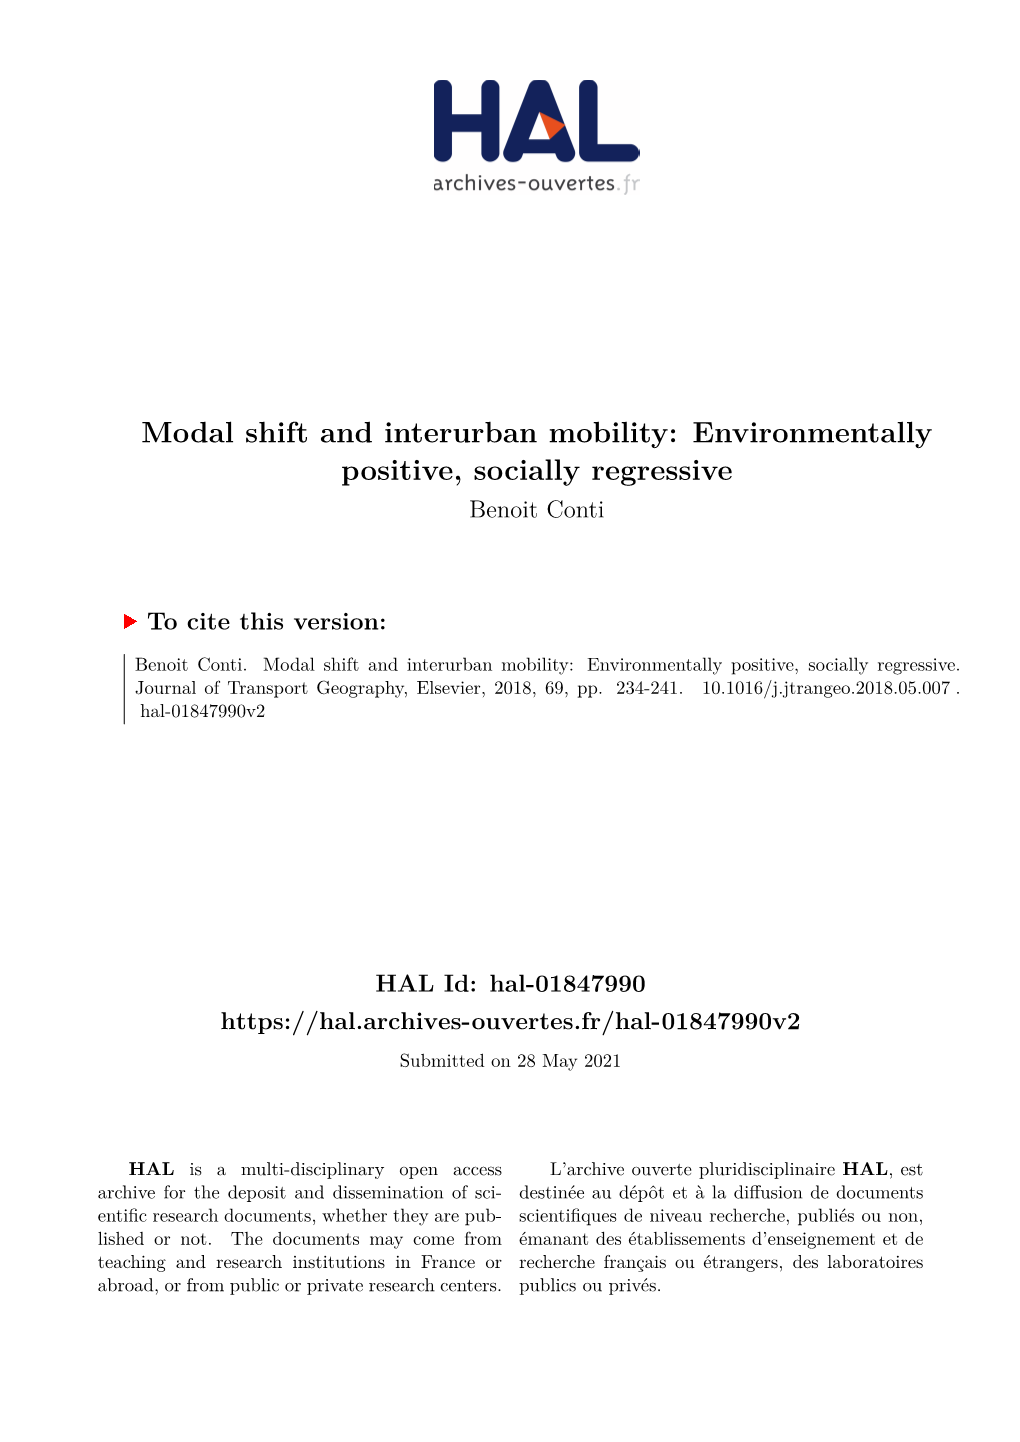 Modal Shift and Interurban Mobility: Environmentally Positive, Socially Regressive Benoit Conti